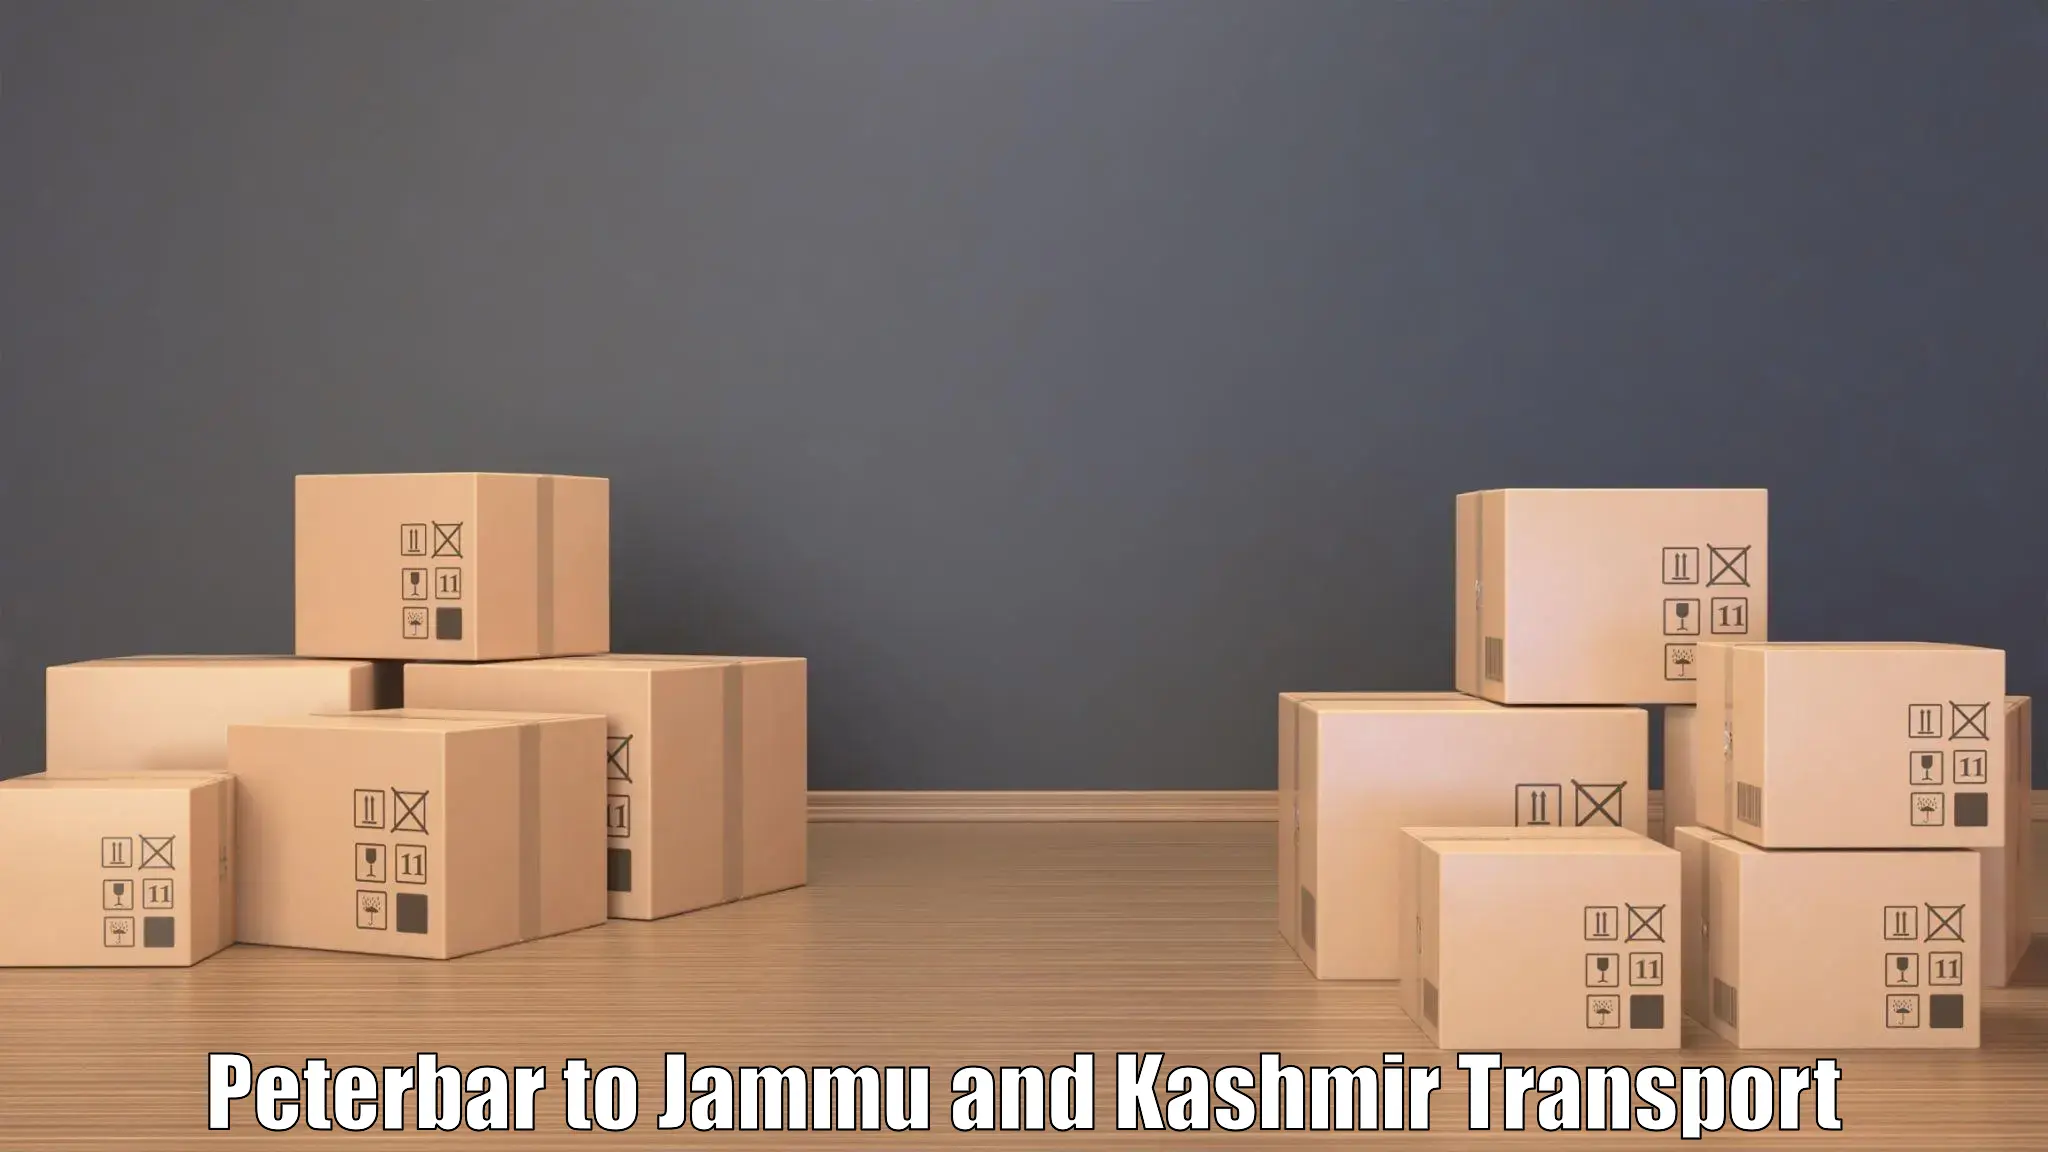 Land transport services Peterbar to Jammu and Kashmir